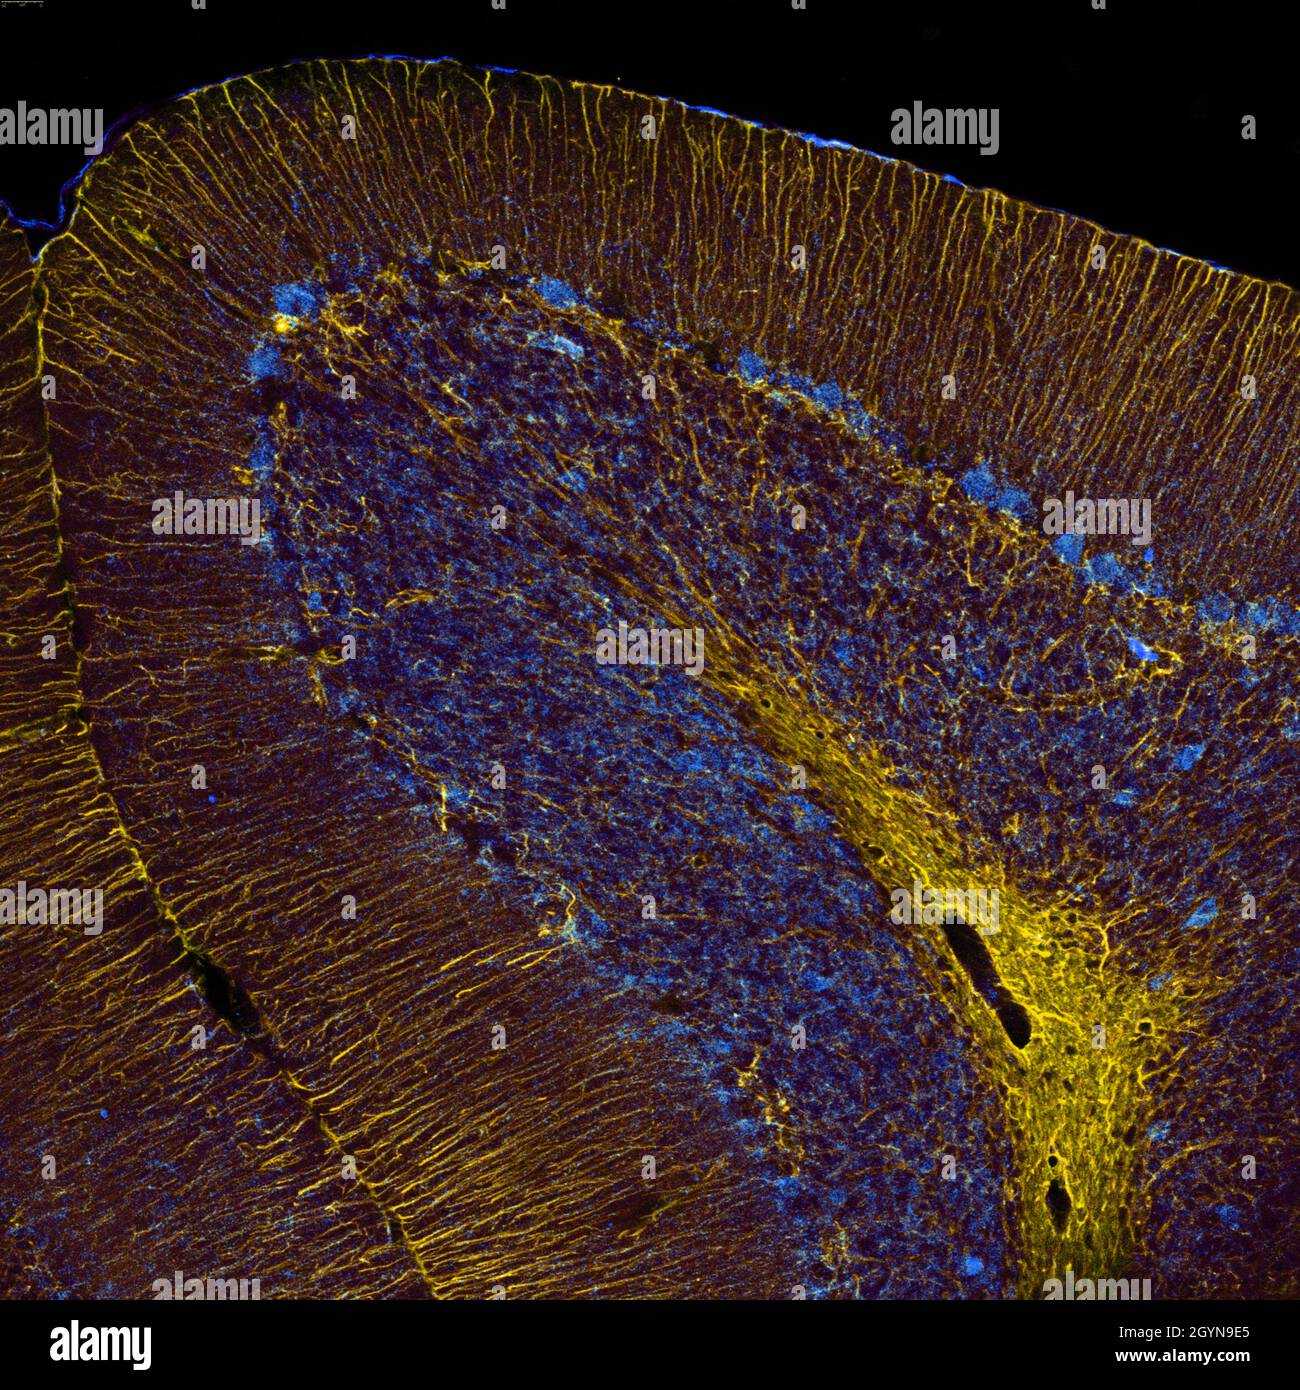 Sagittaler Abschnitt des Mauszerebellums, der mit Immunfluoreszenz markiert und mit konfokaler Laserscannungsmikroskopie visualisiert wurde. Große Purkinje-Zellen und Stockfoto